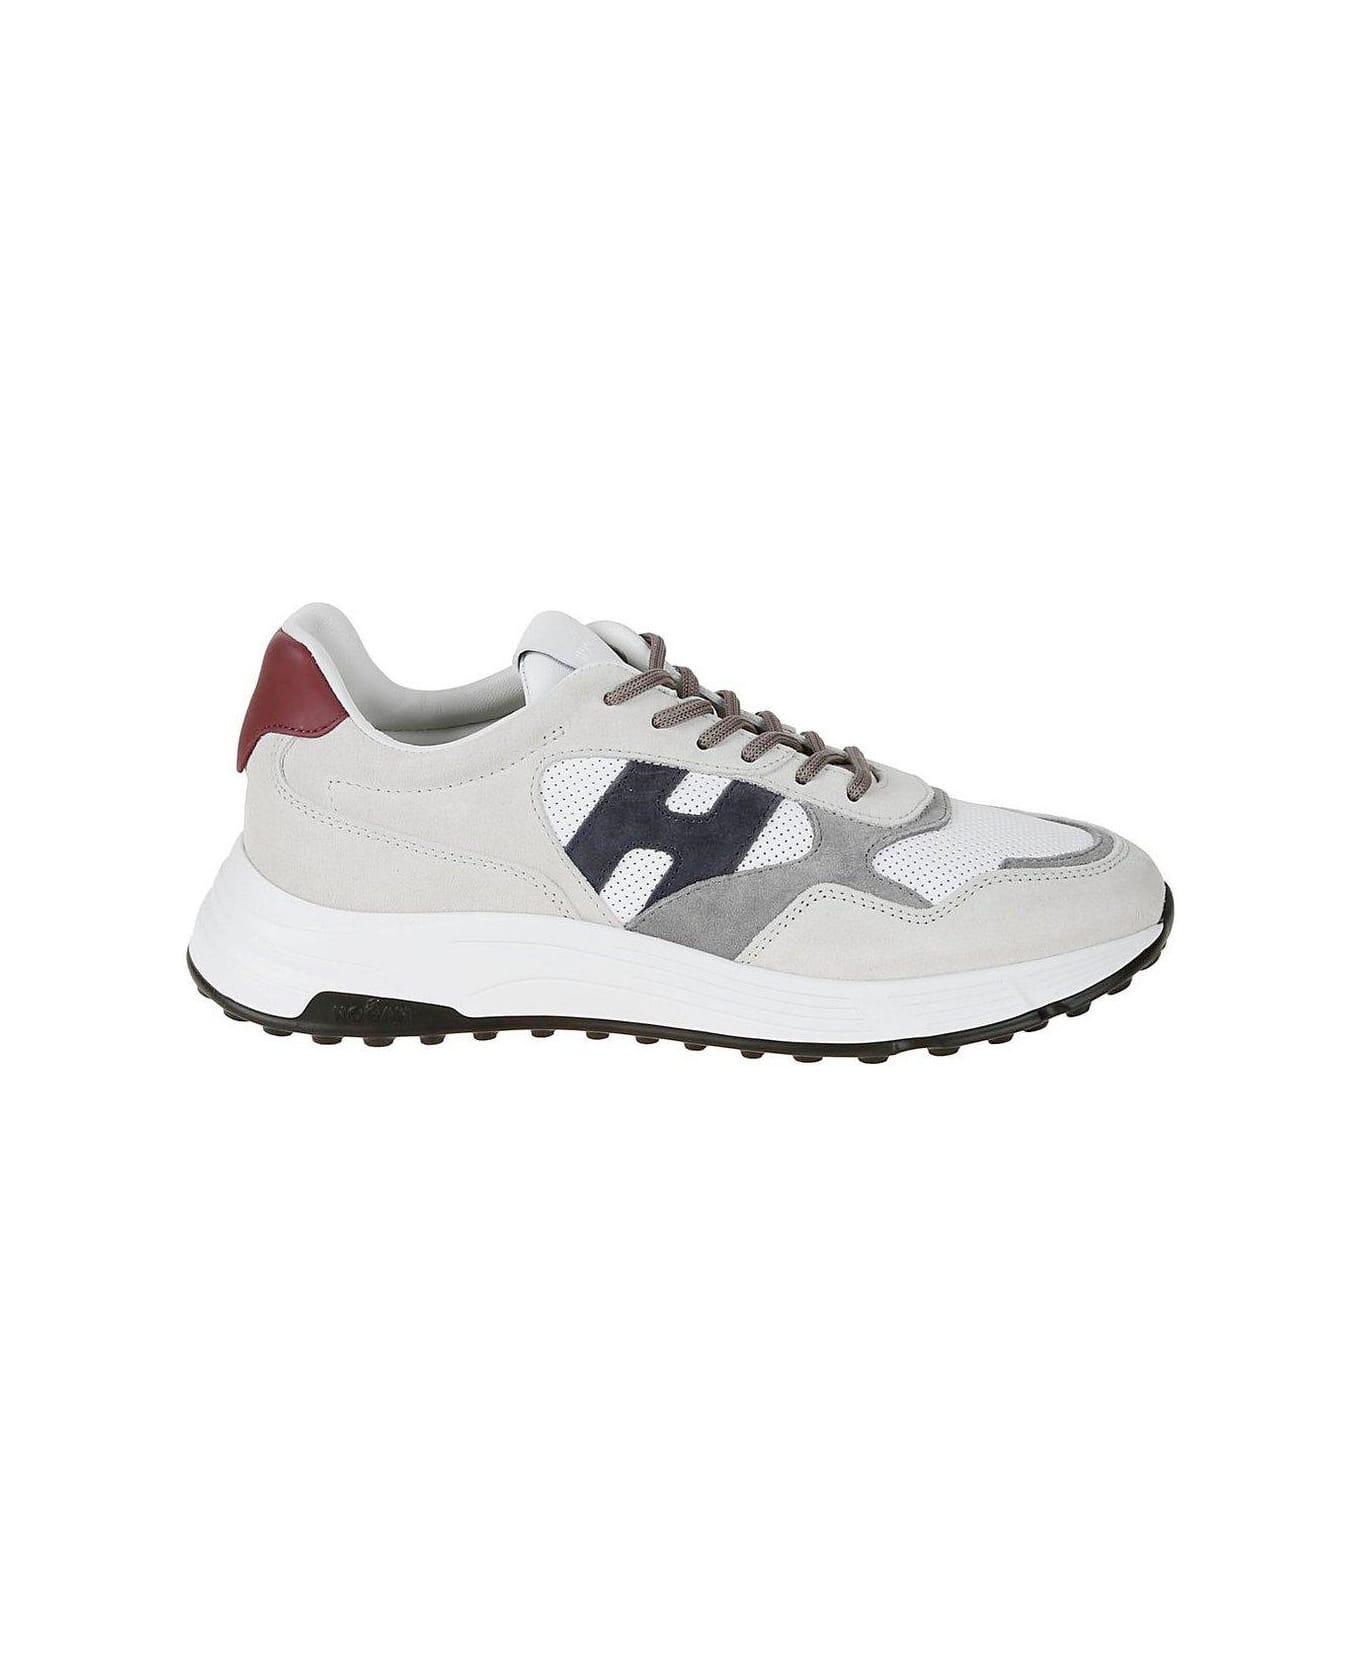 Hogan Hyperlight Low-top Sneakers - N bianco/blu